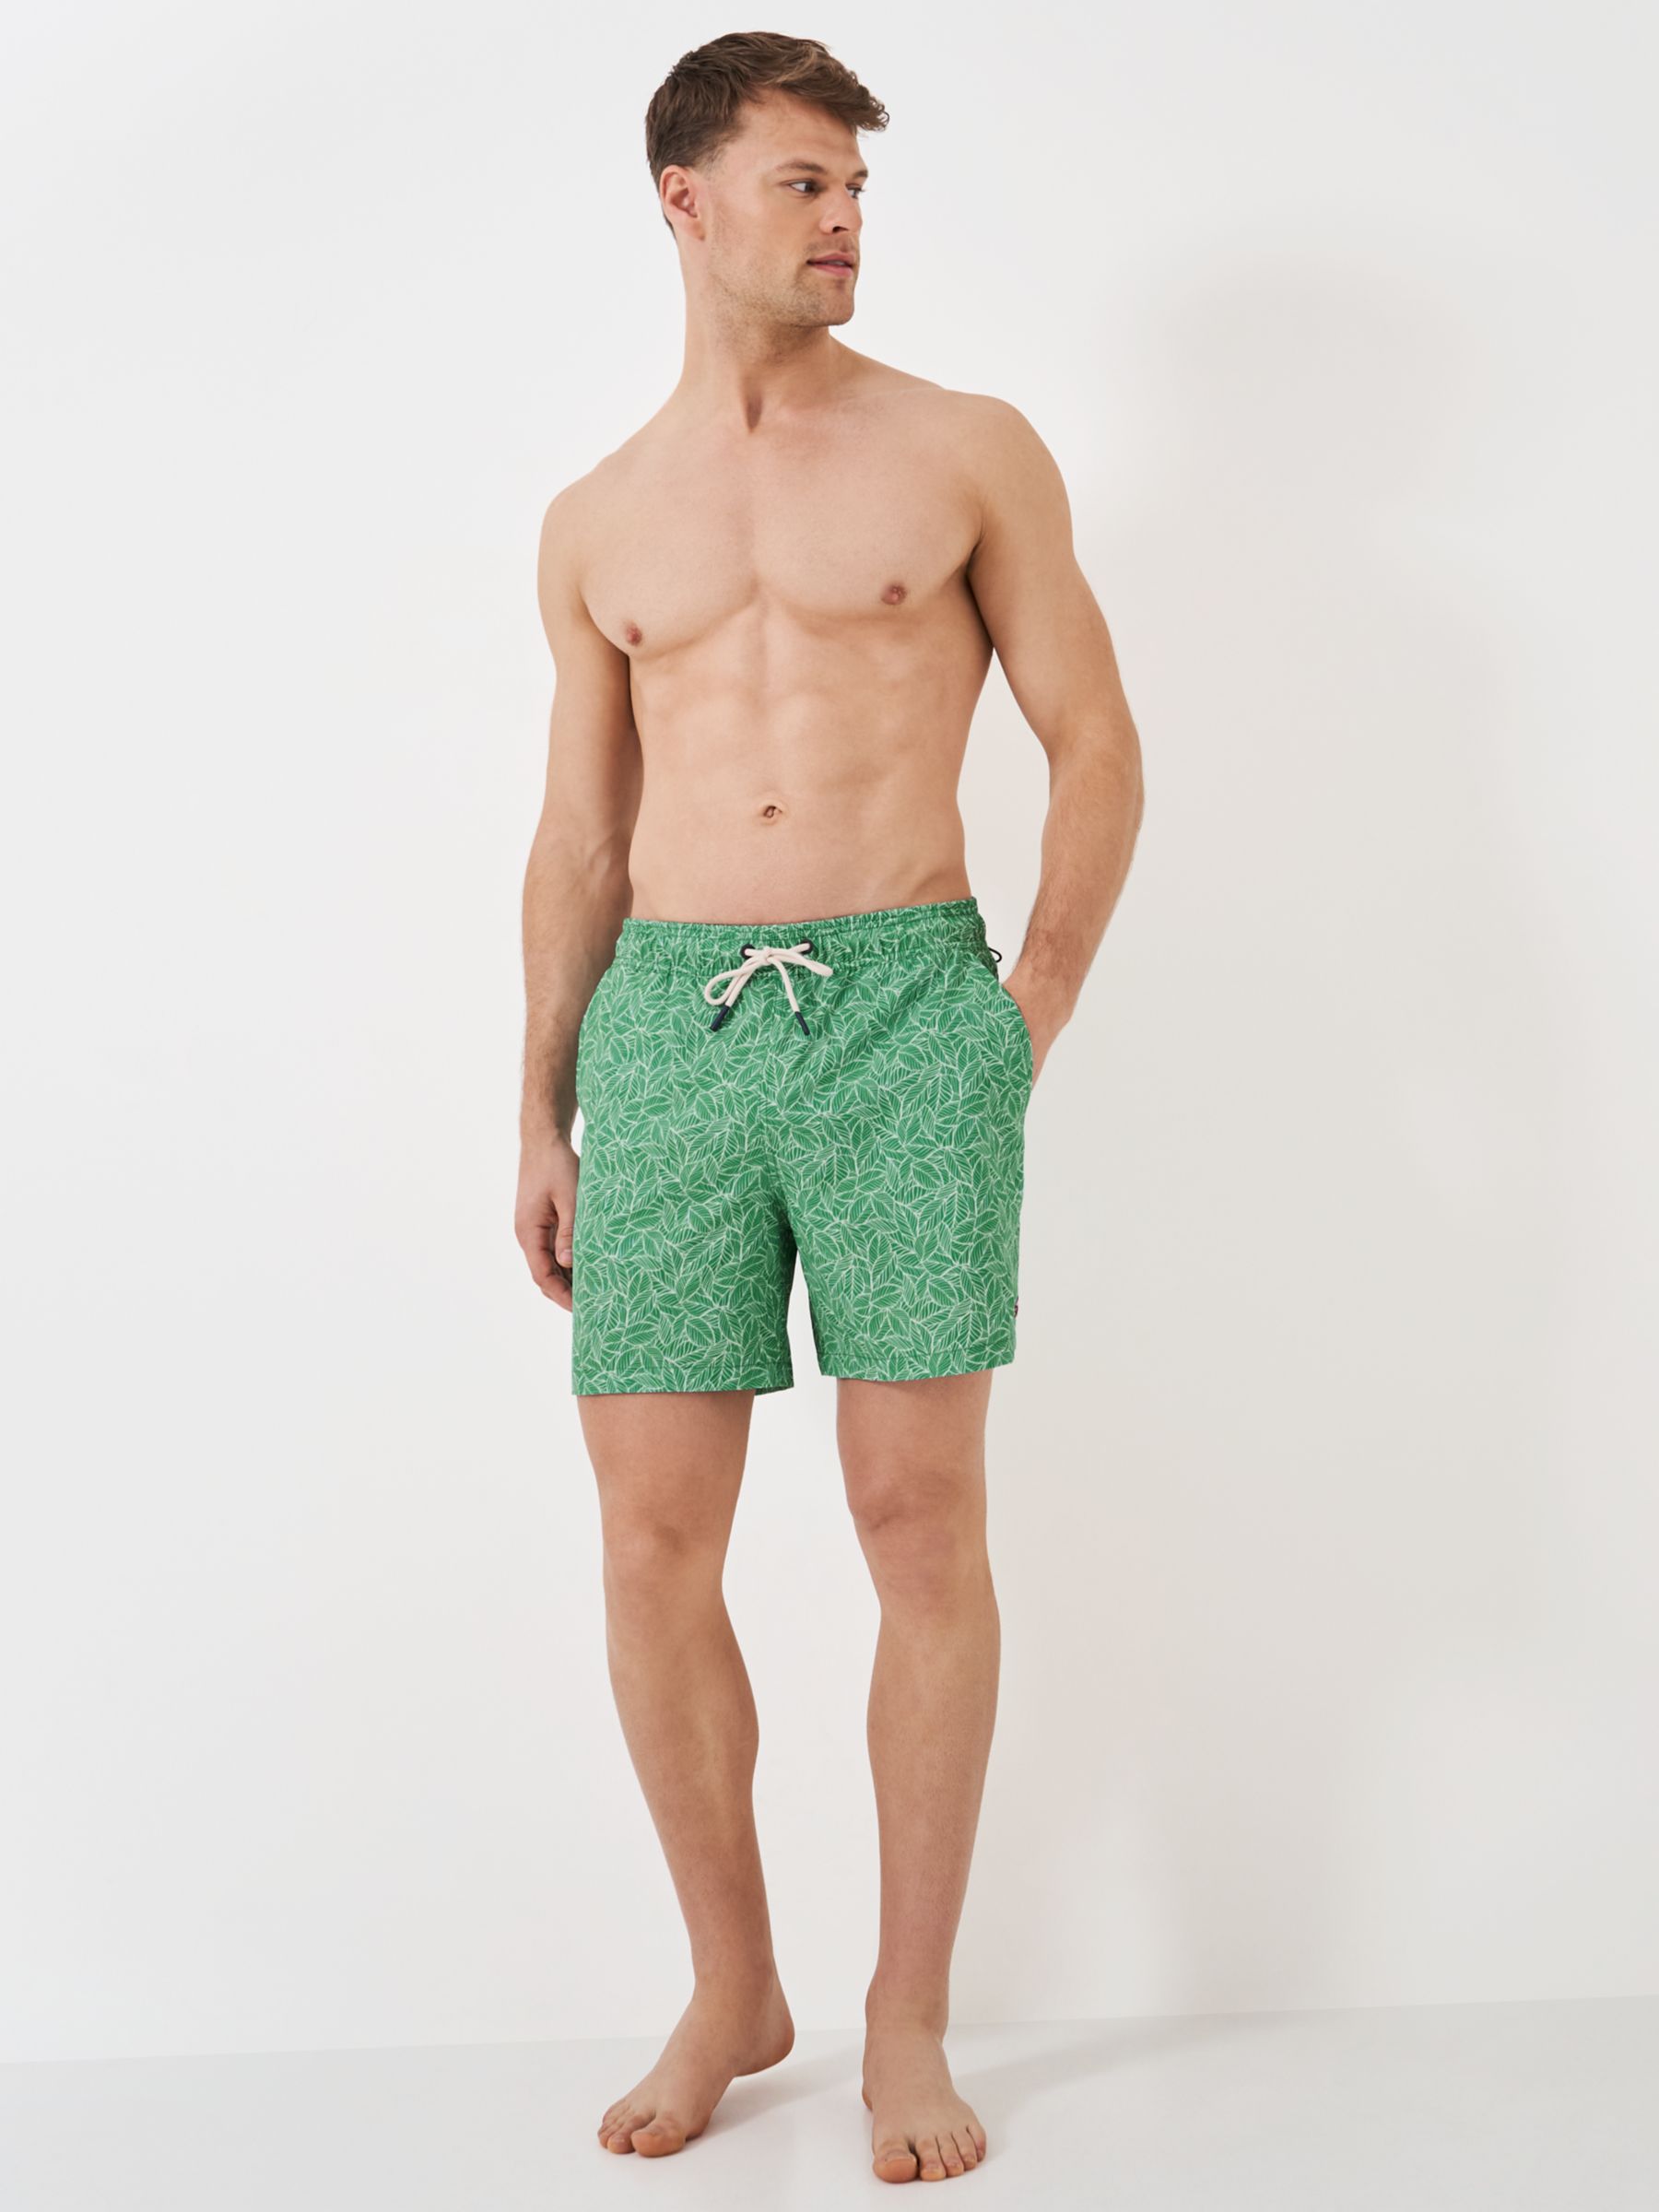 Crew Clothing Leaf Print Swim Shorts, Green, XL